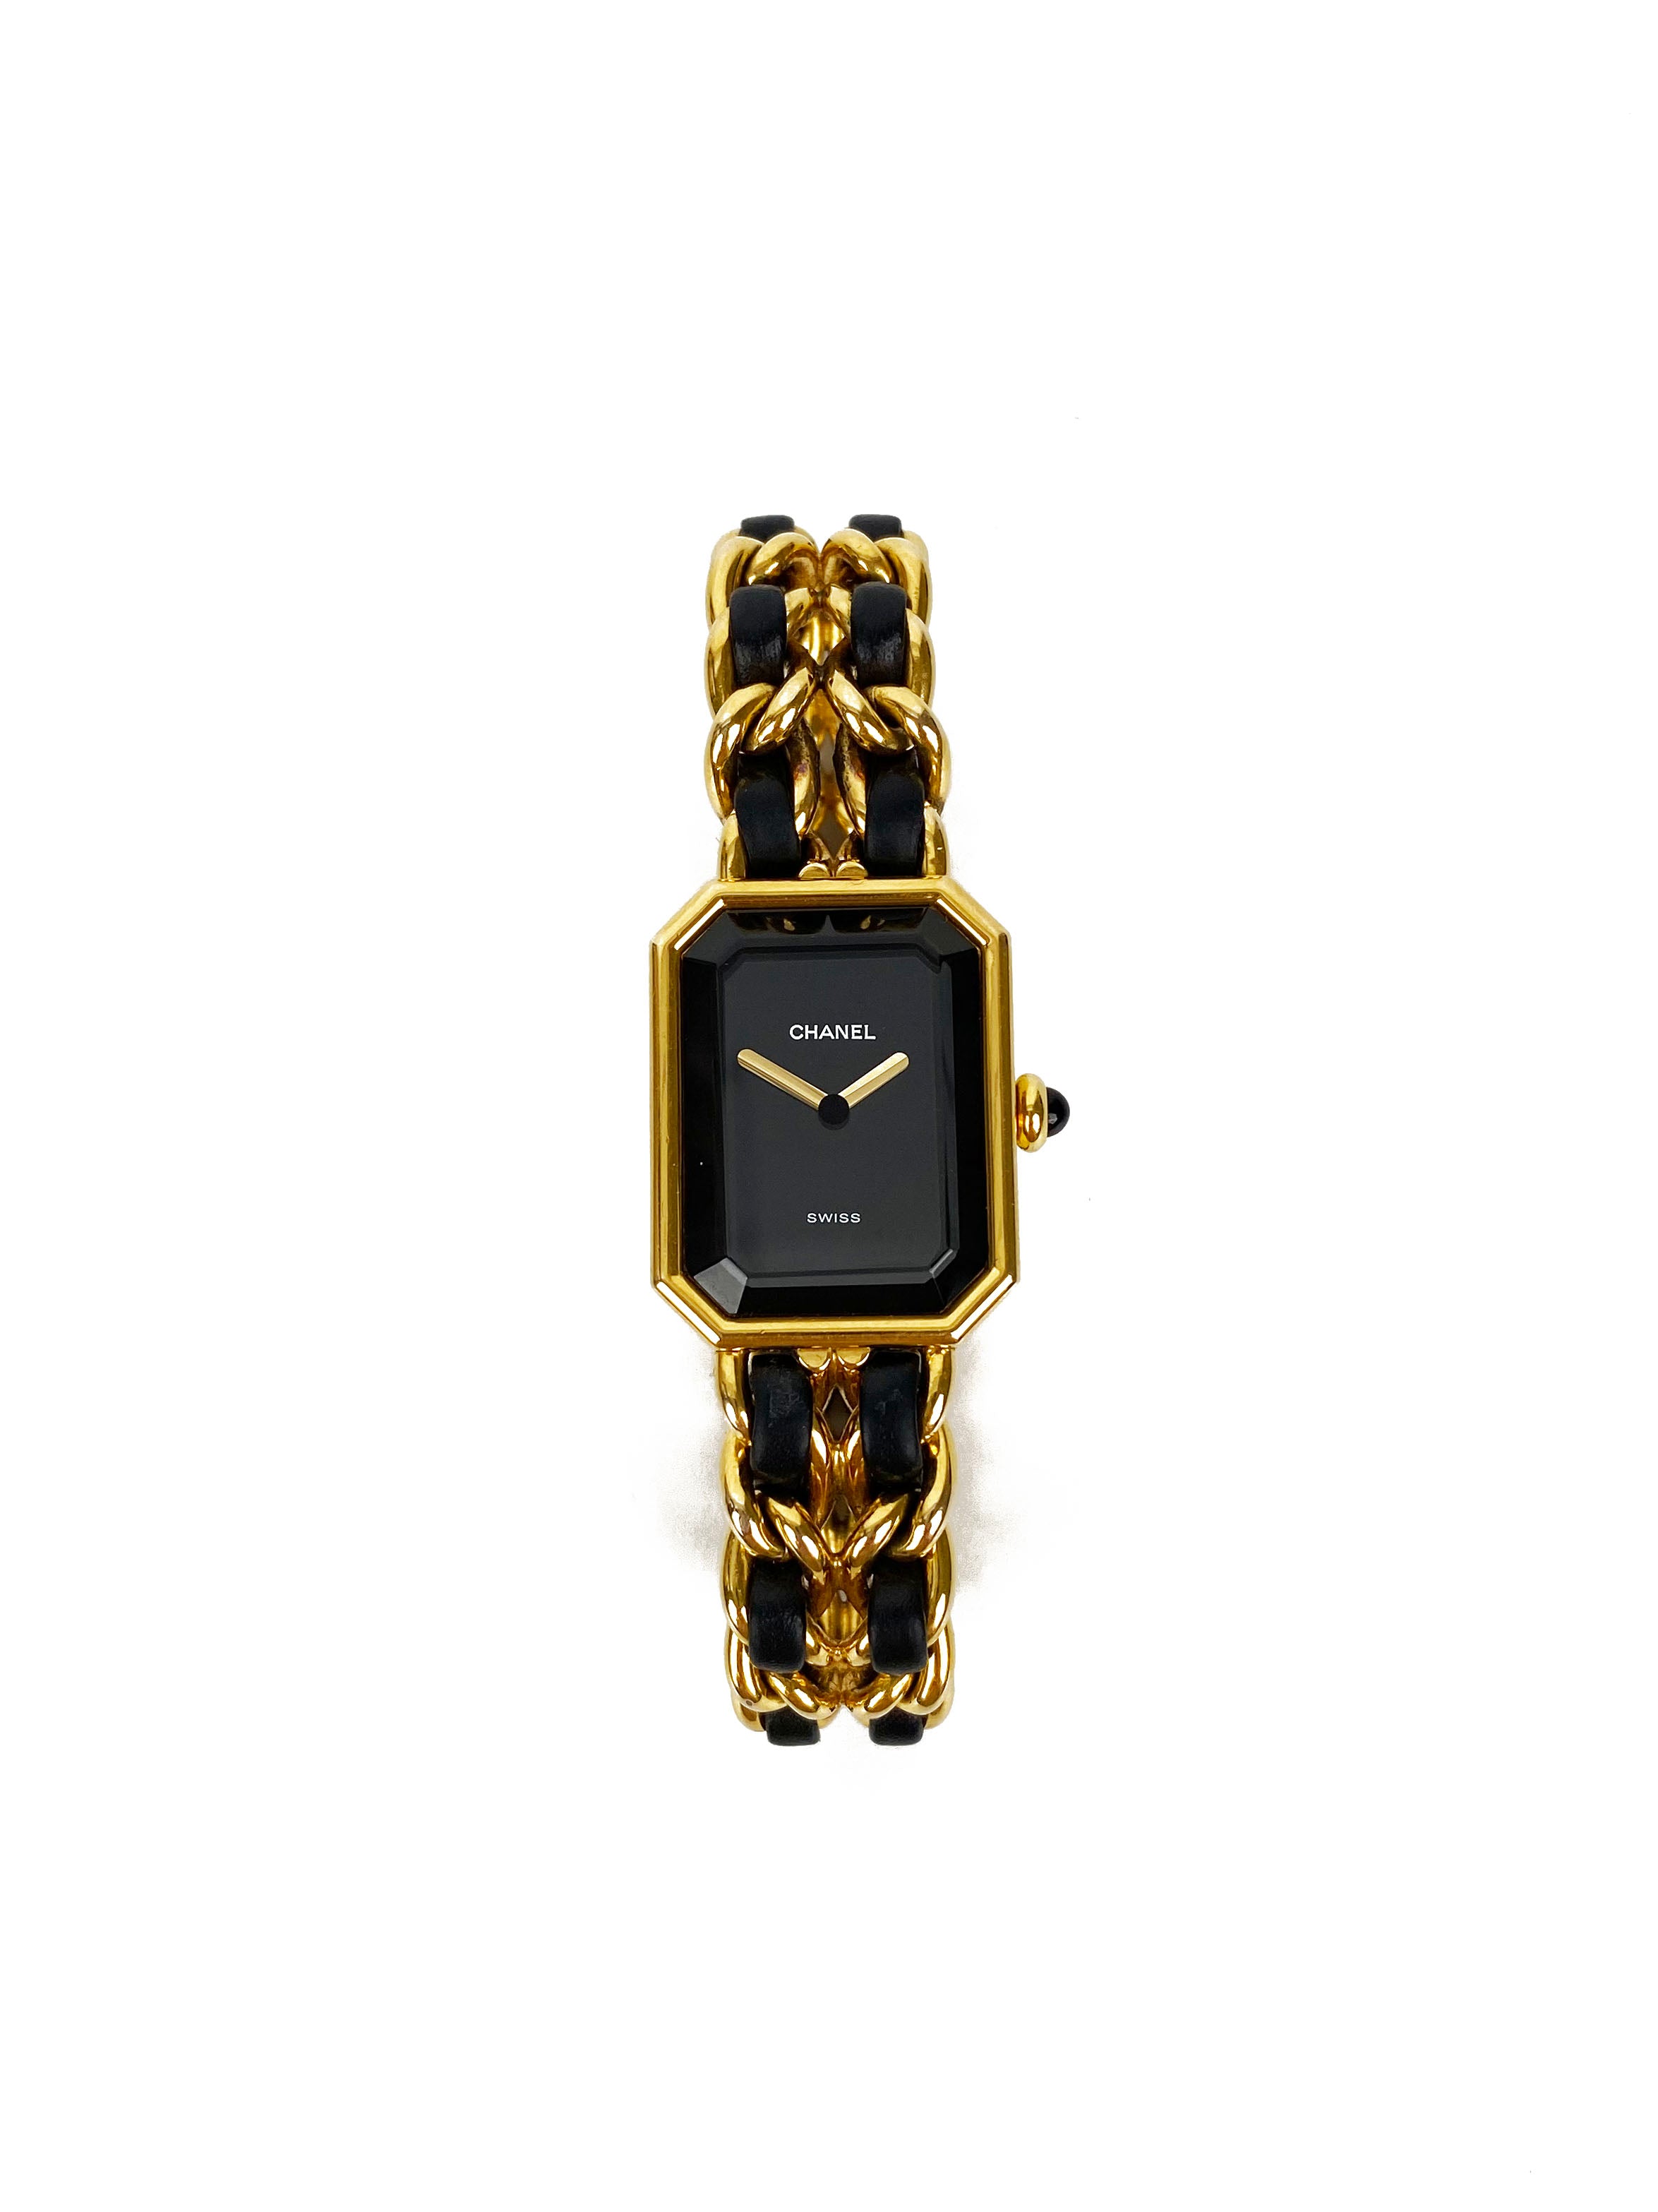 Chanel Black & Gold Premiere Watch – Votre Luxe